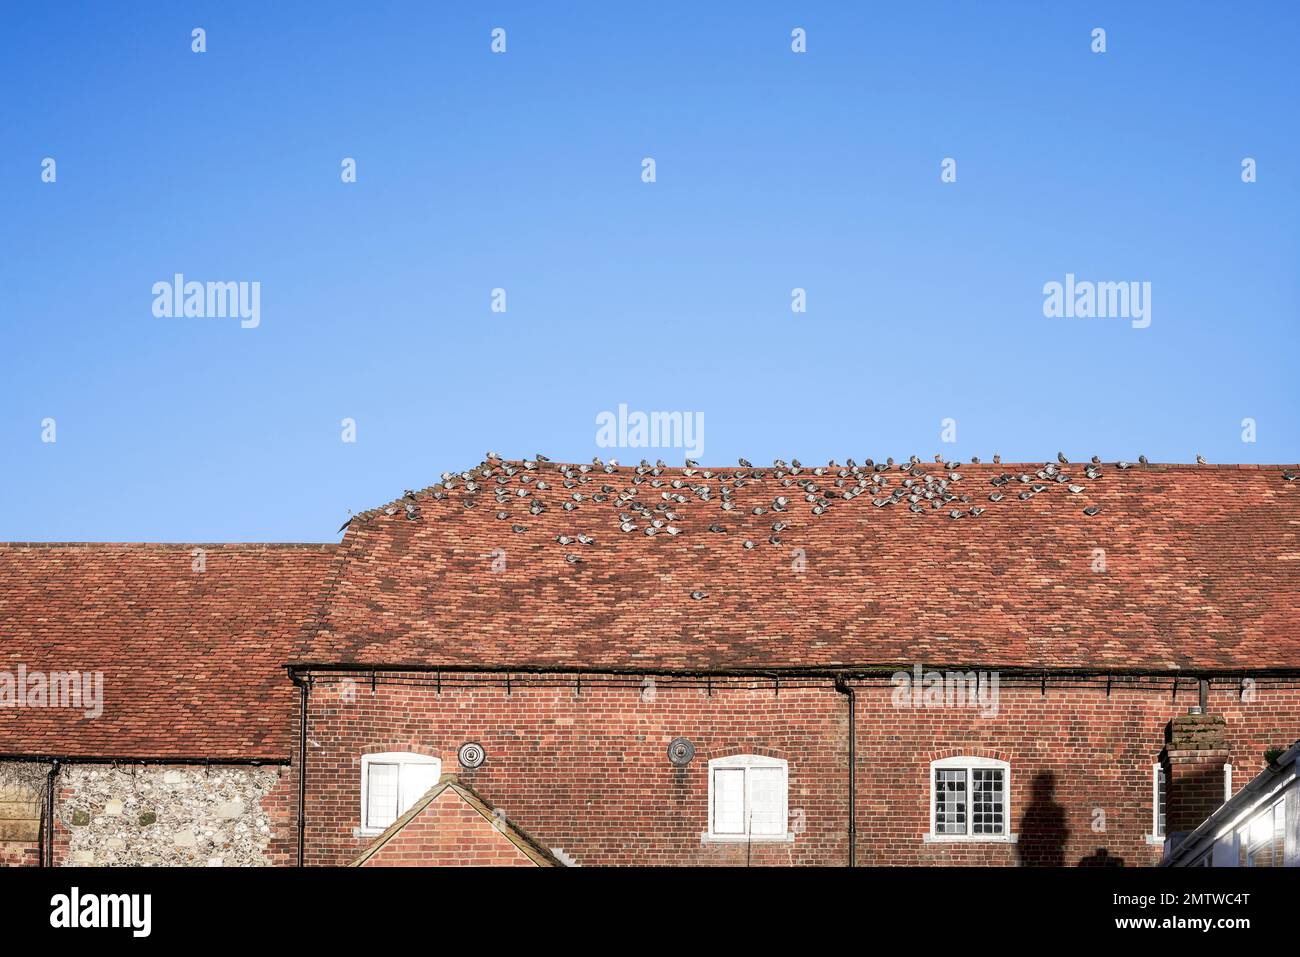 Palomas que descansan en un techo de baldosas de arcilla roja con el cielo azul detrás Foto de stock